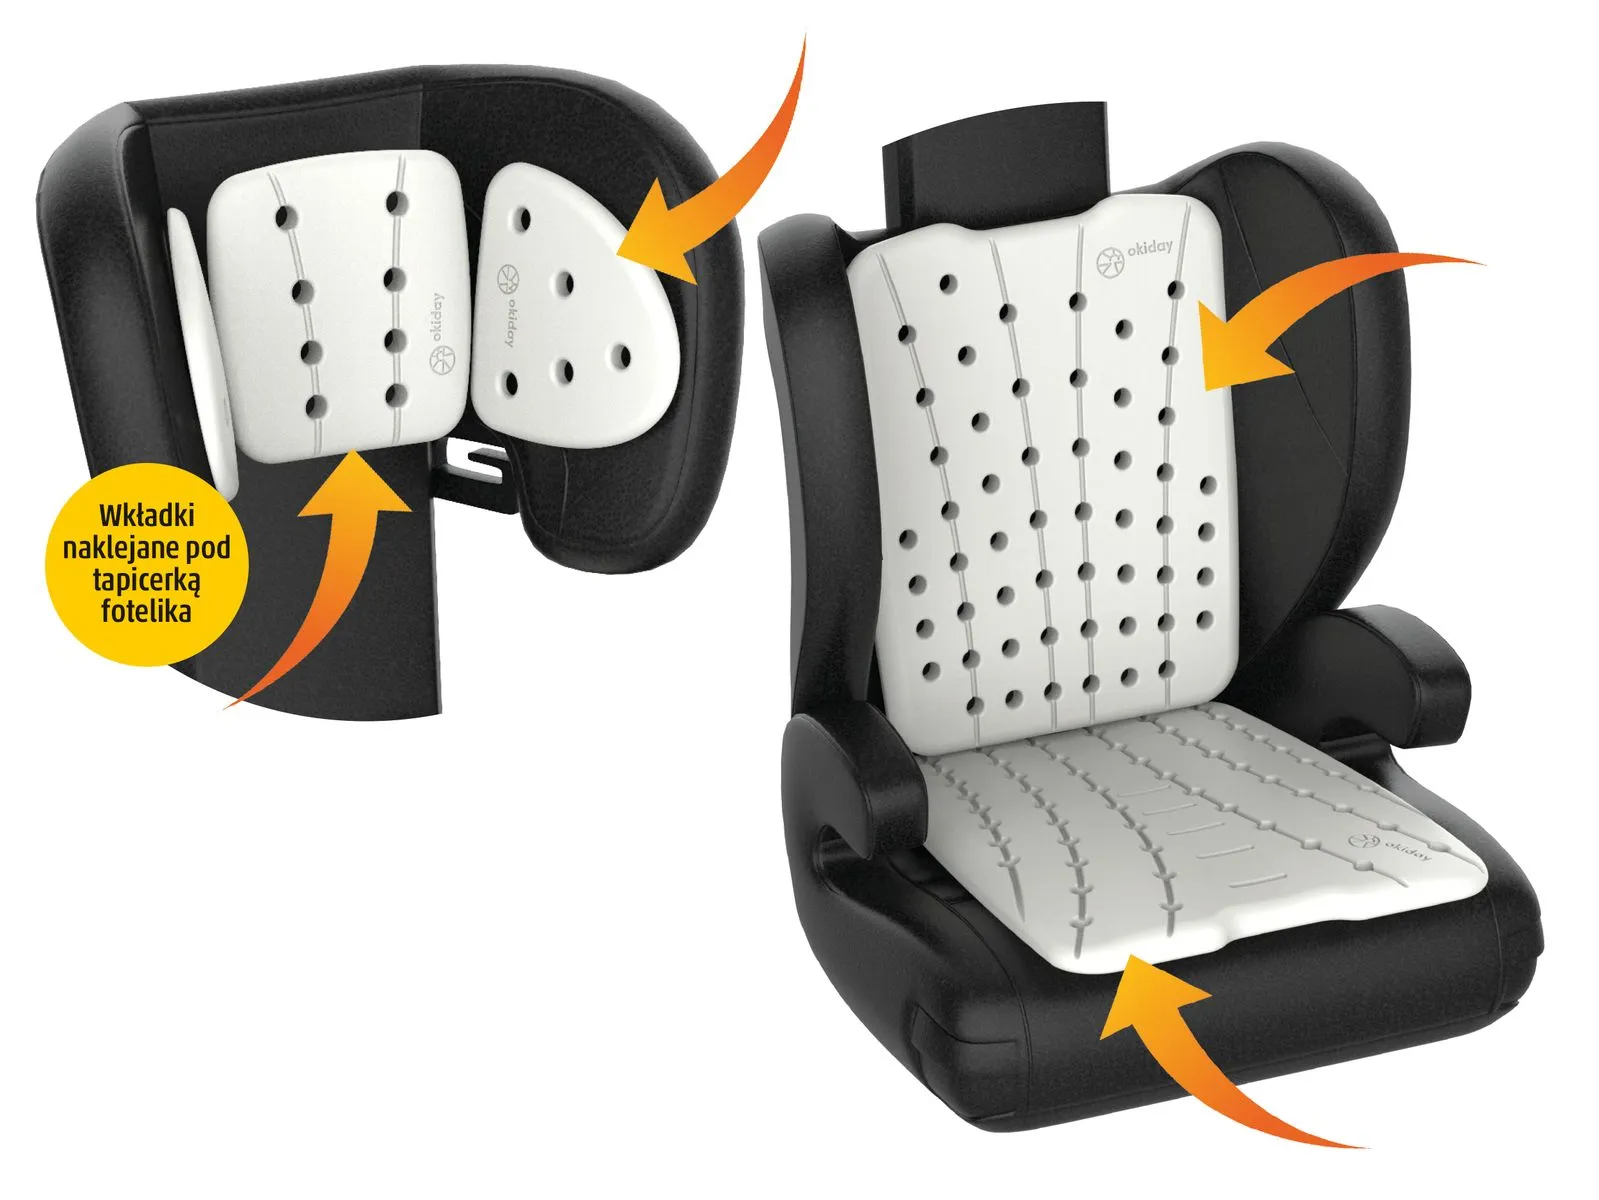 Zestaw Okiday XL: zagłówek, oparcie, siedzisko akcesoria podróżne do fotelika samochodowego